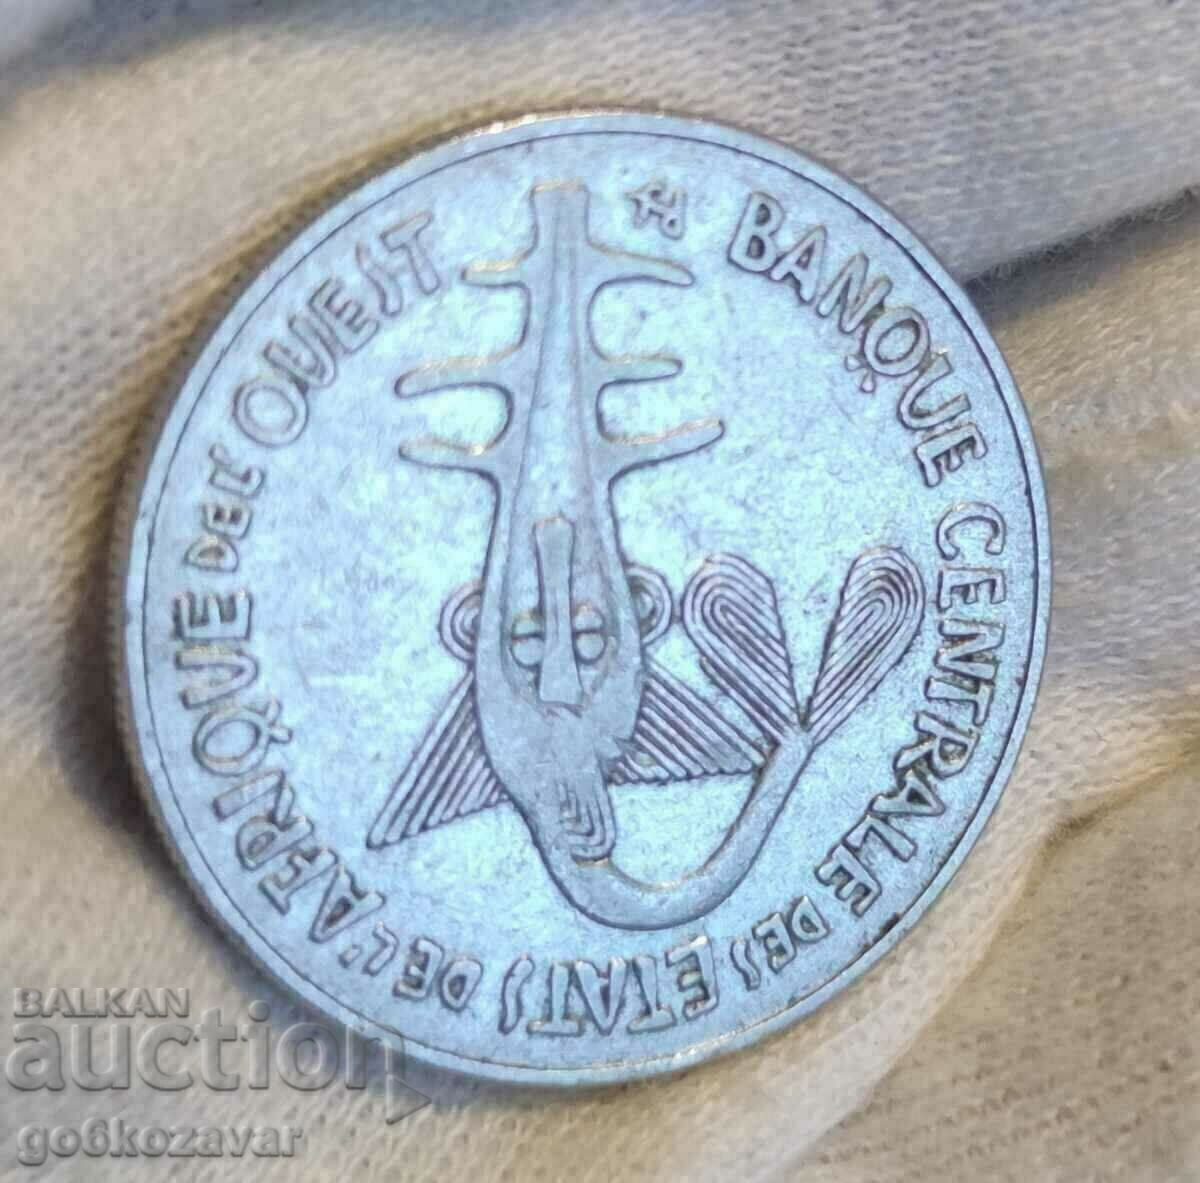 Africa de Vest 100 de franci 1987